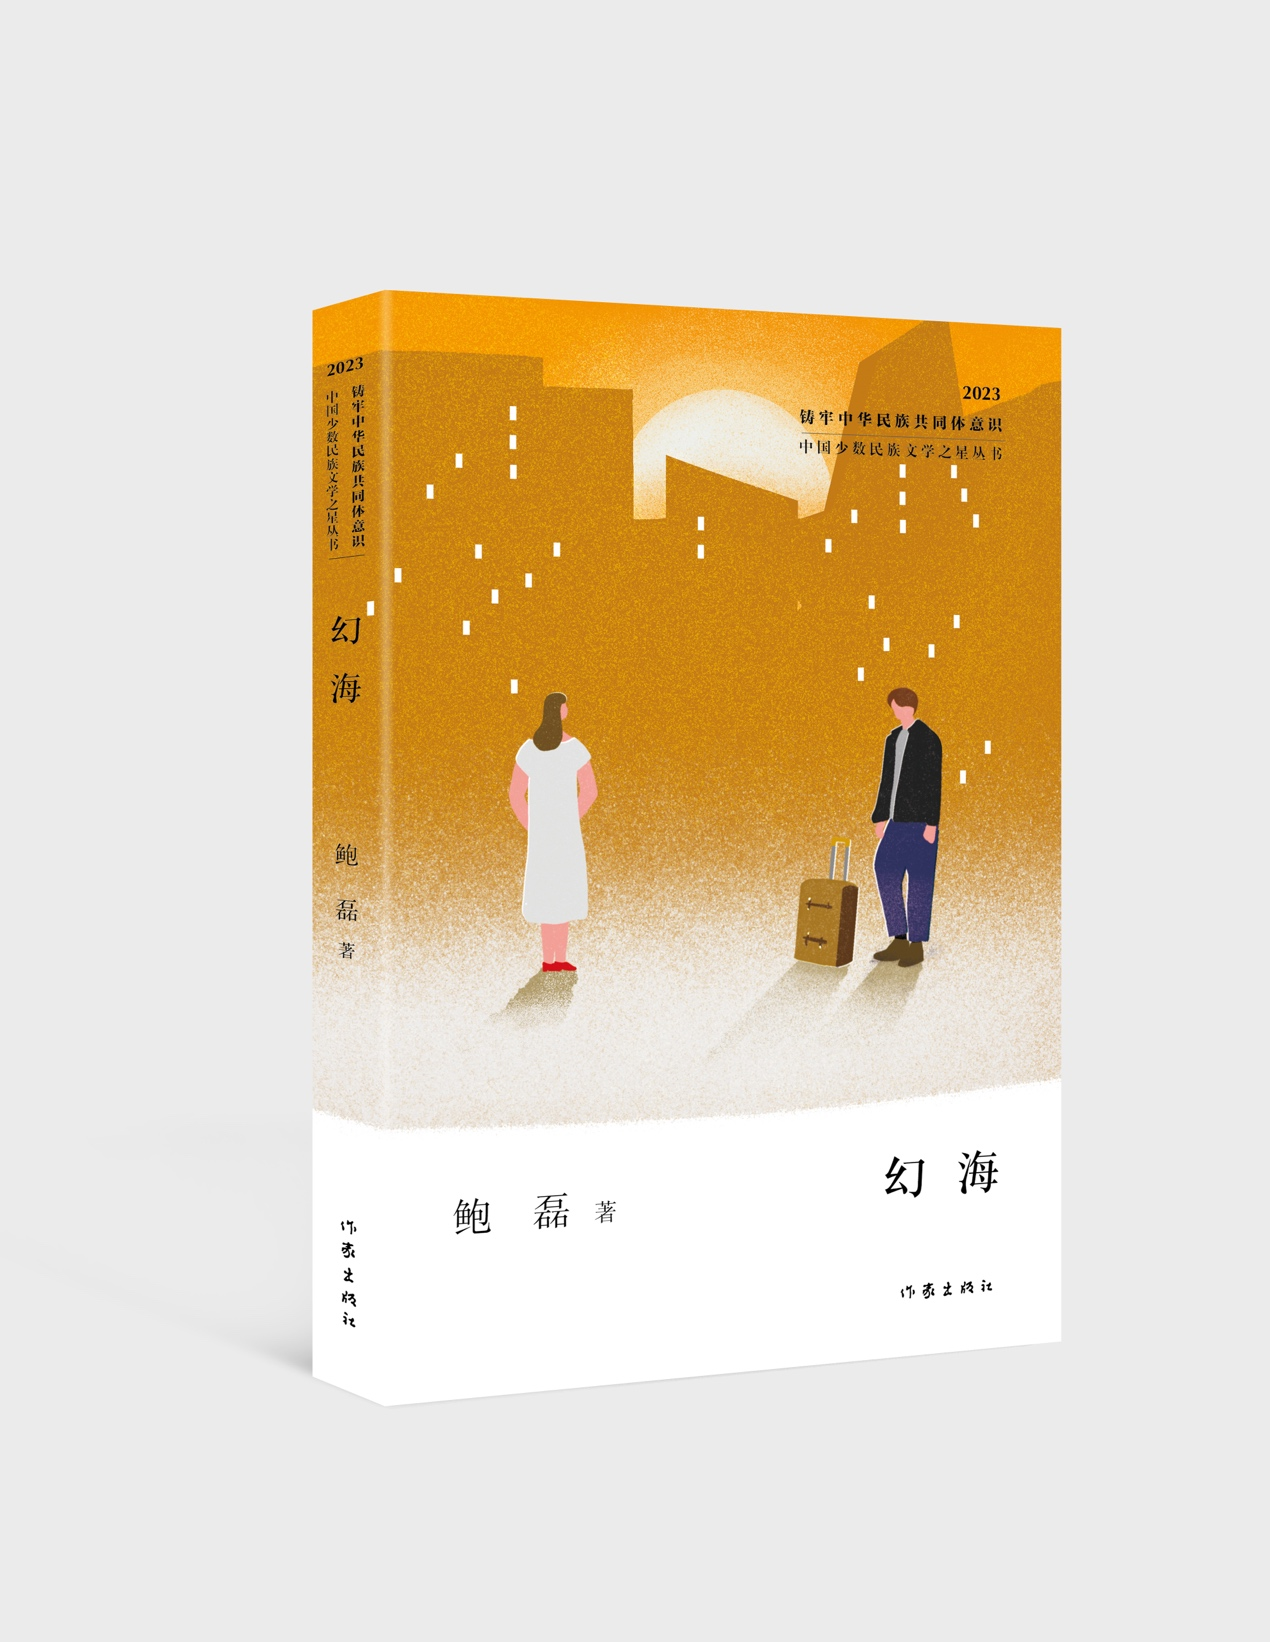 刘亮程长篇小说《本巴》：现代史诗的梦幻与现实丨凤凰书评_游戏_语言